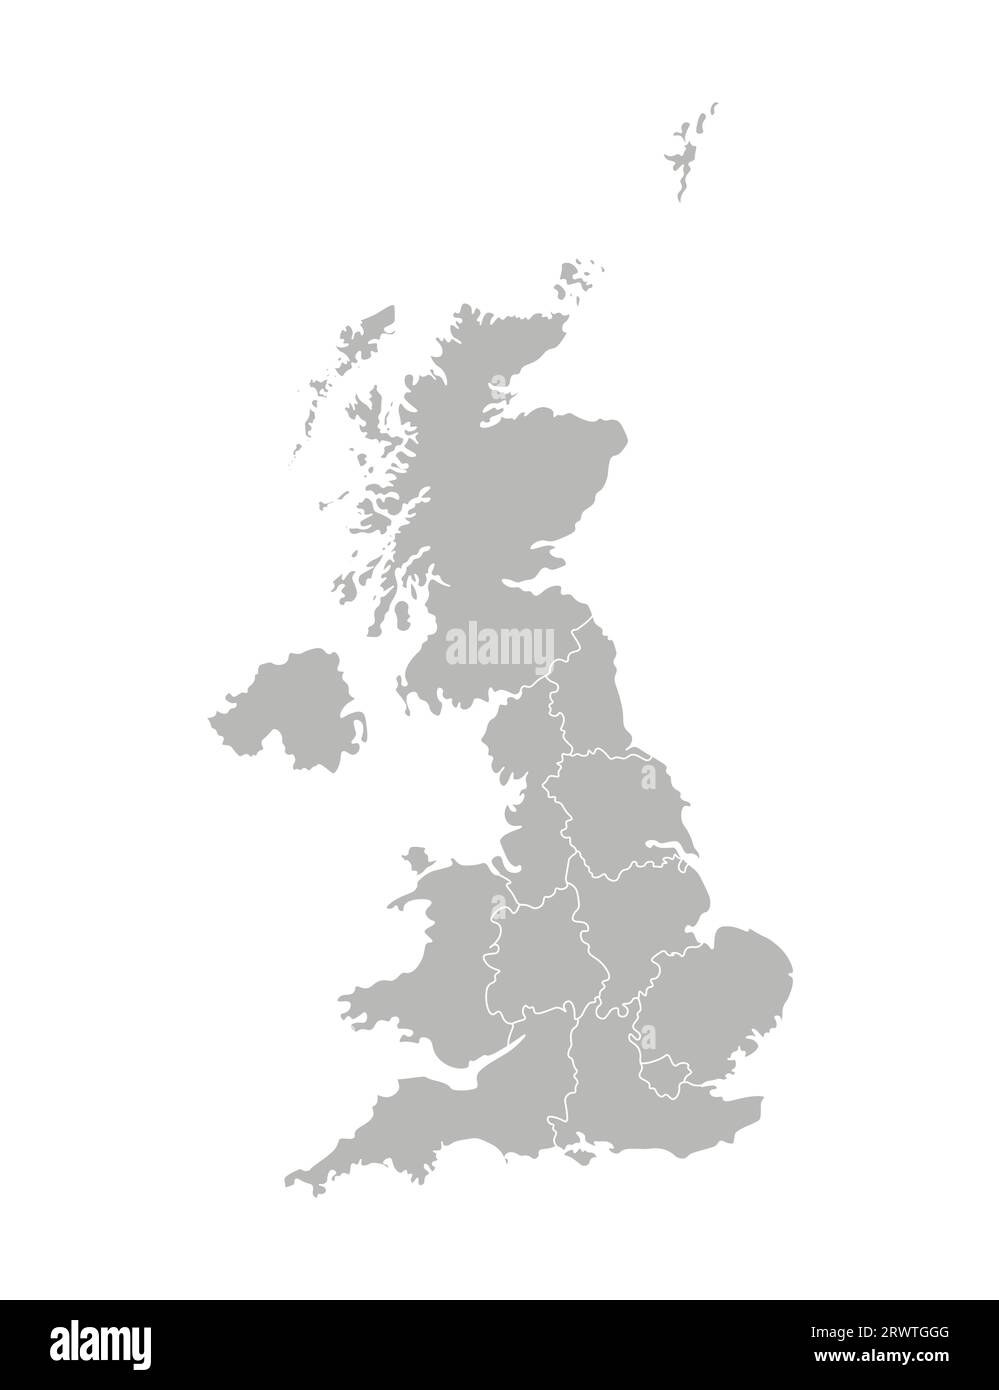 Illustration vectorielle isolée d'une carte administrative simplifiée du Royaume-Uni de Grande-Bretagne et d'Irlande du Nord. Frontières des provinces RE Illustration de Vecteur